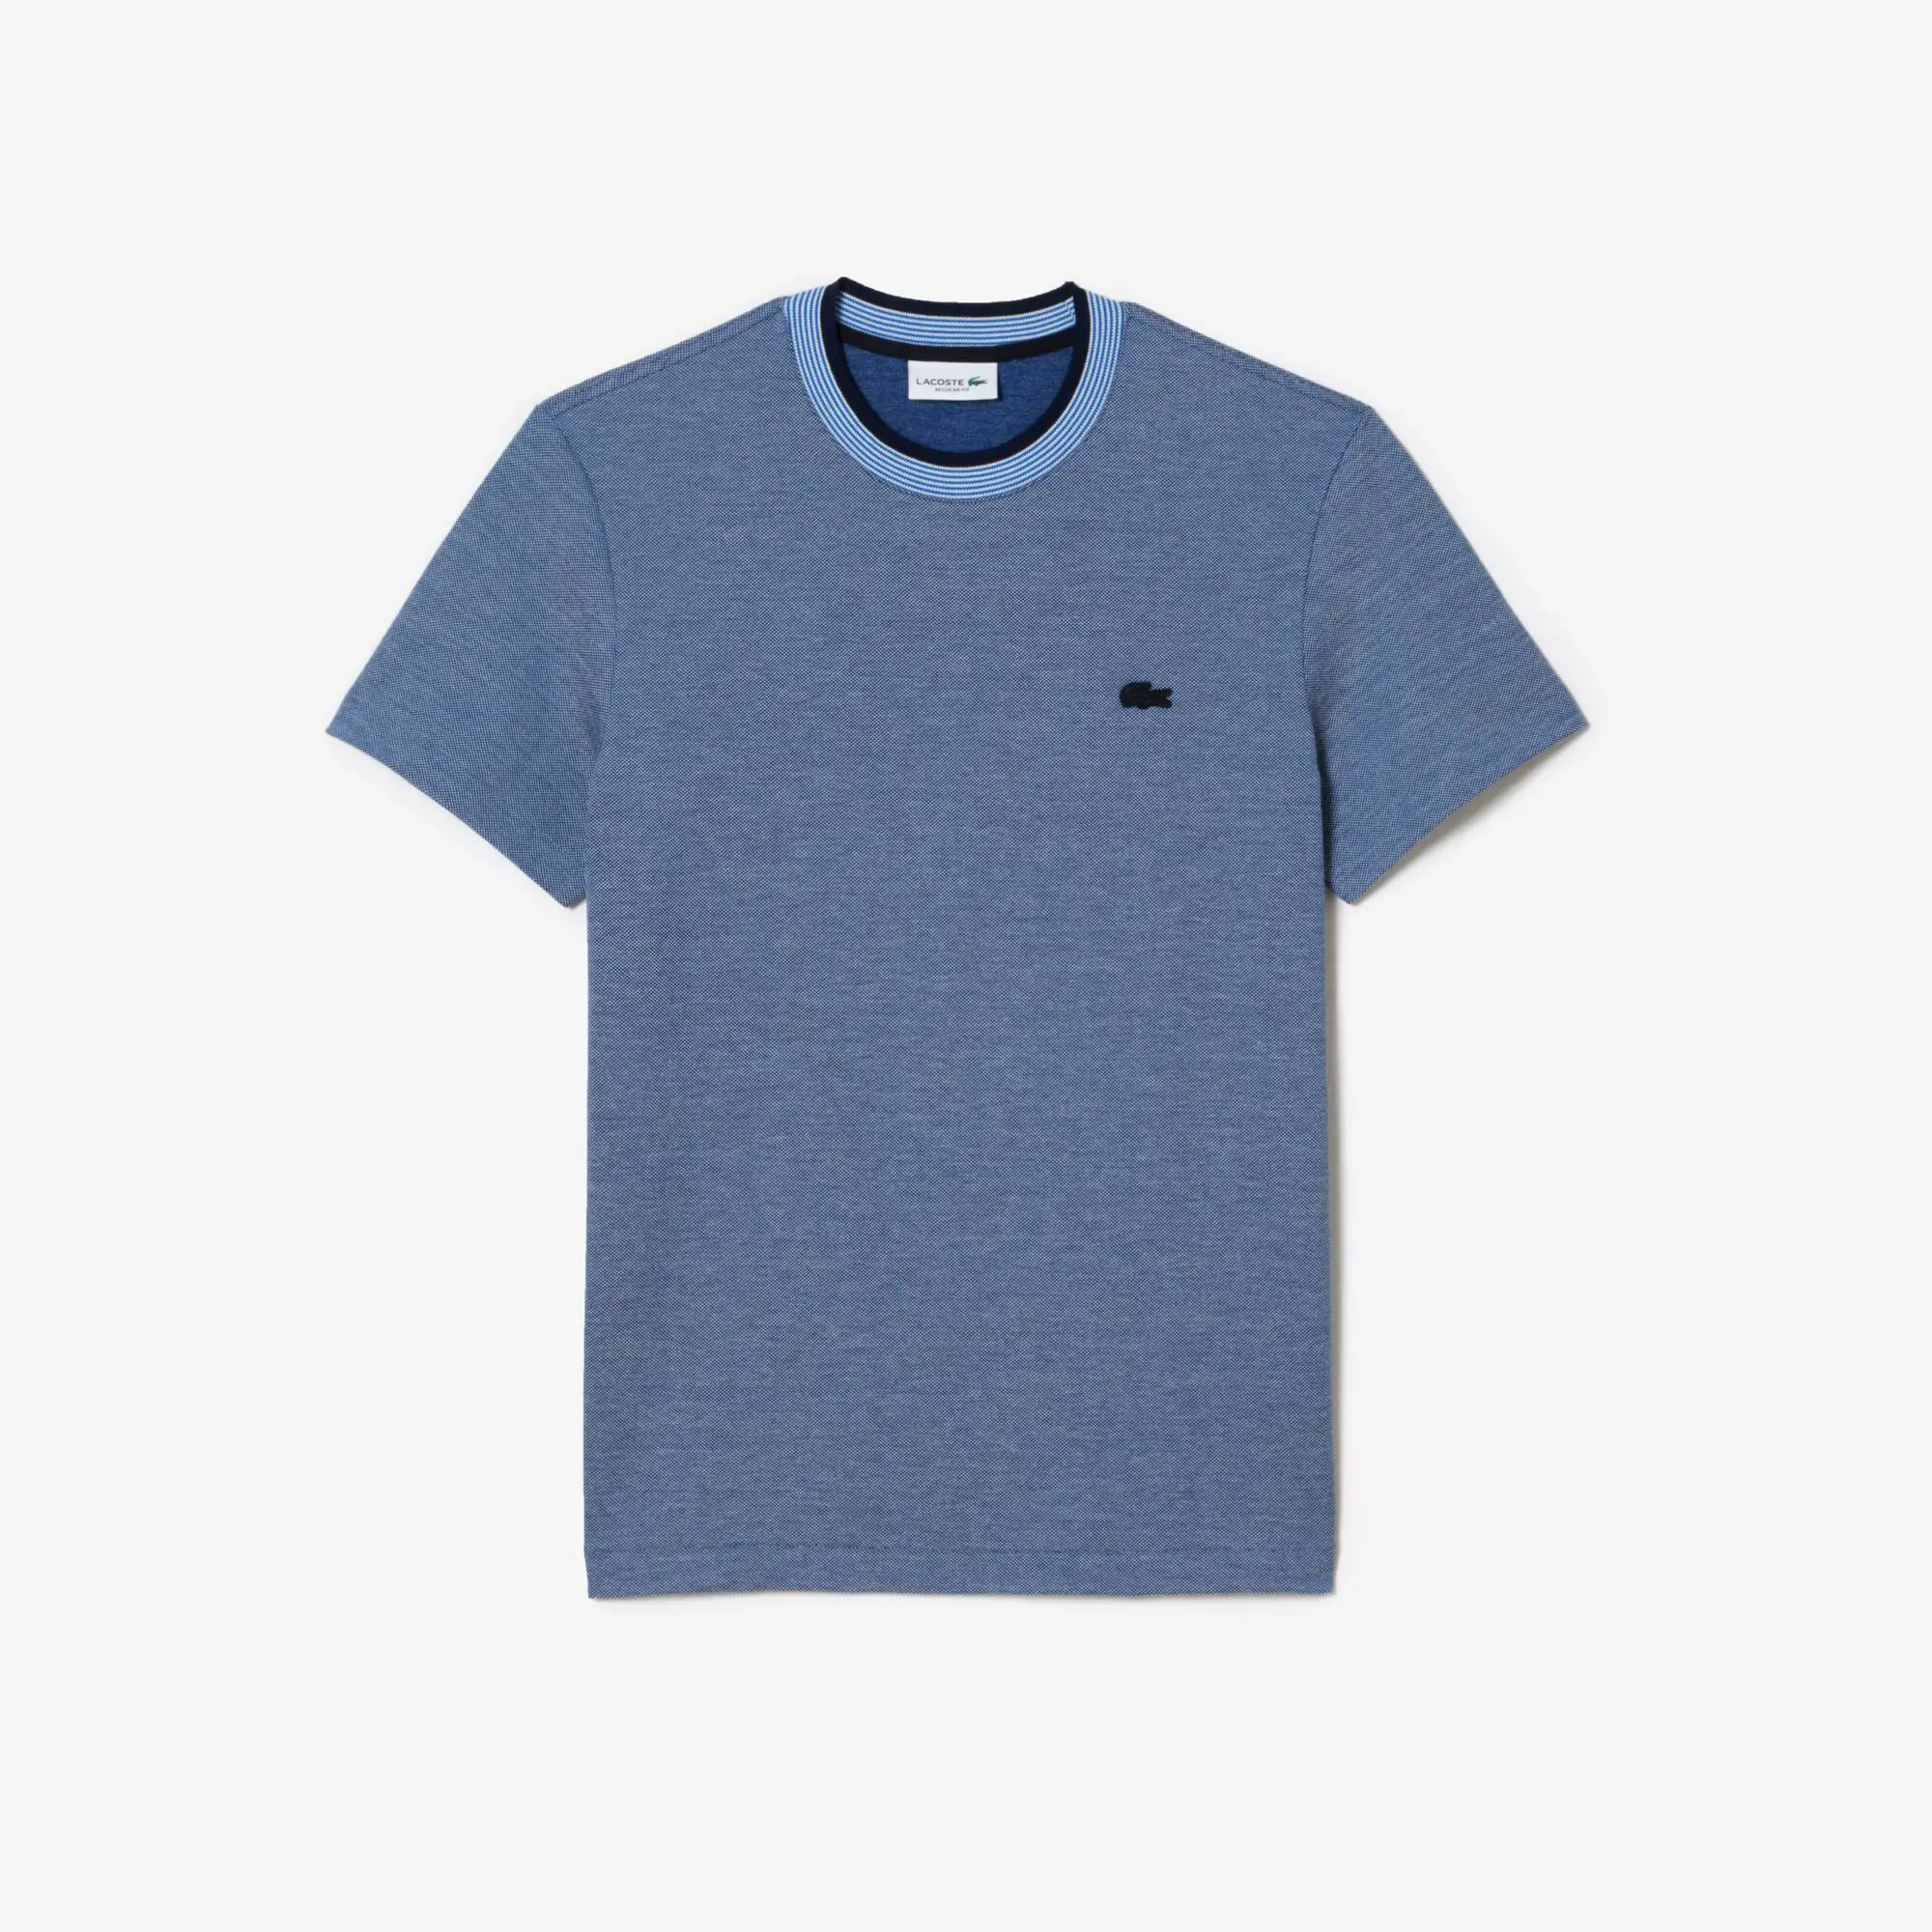 Lacoste Men’s Crew Neck Premium Cotton T-shirt. 2